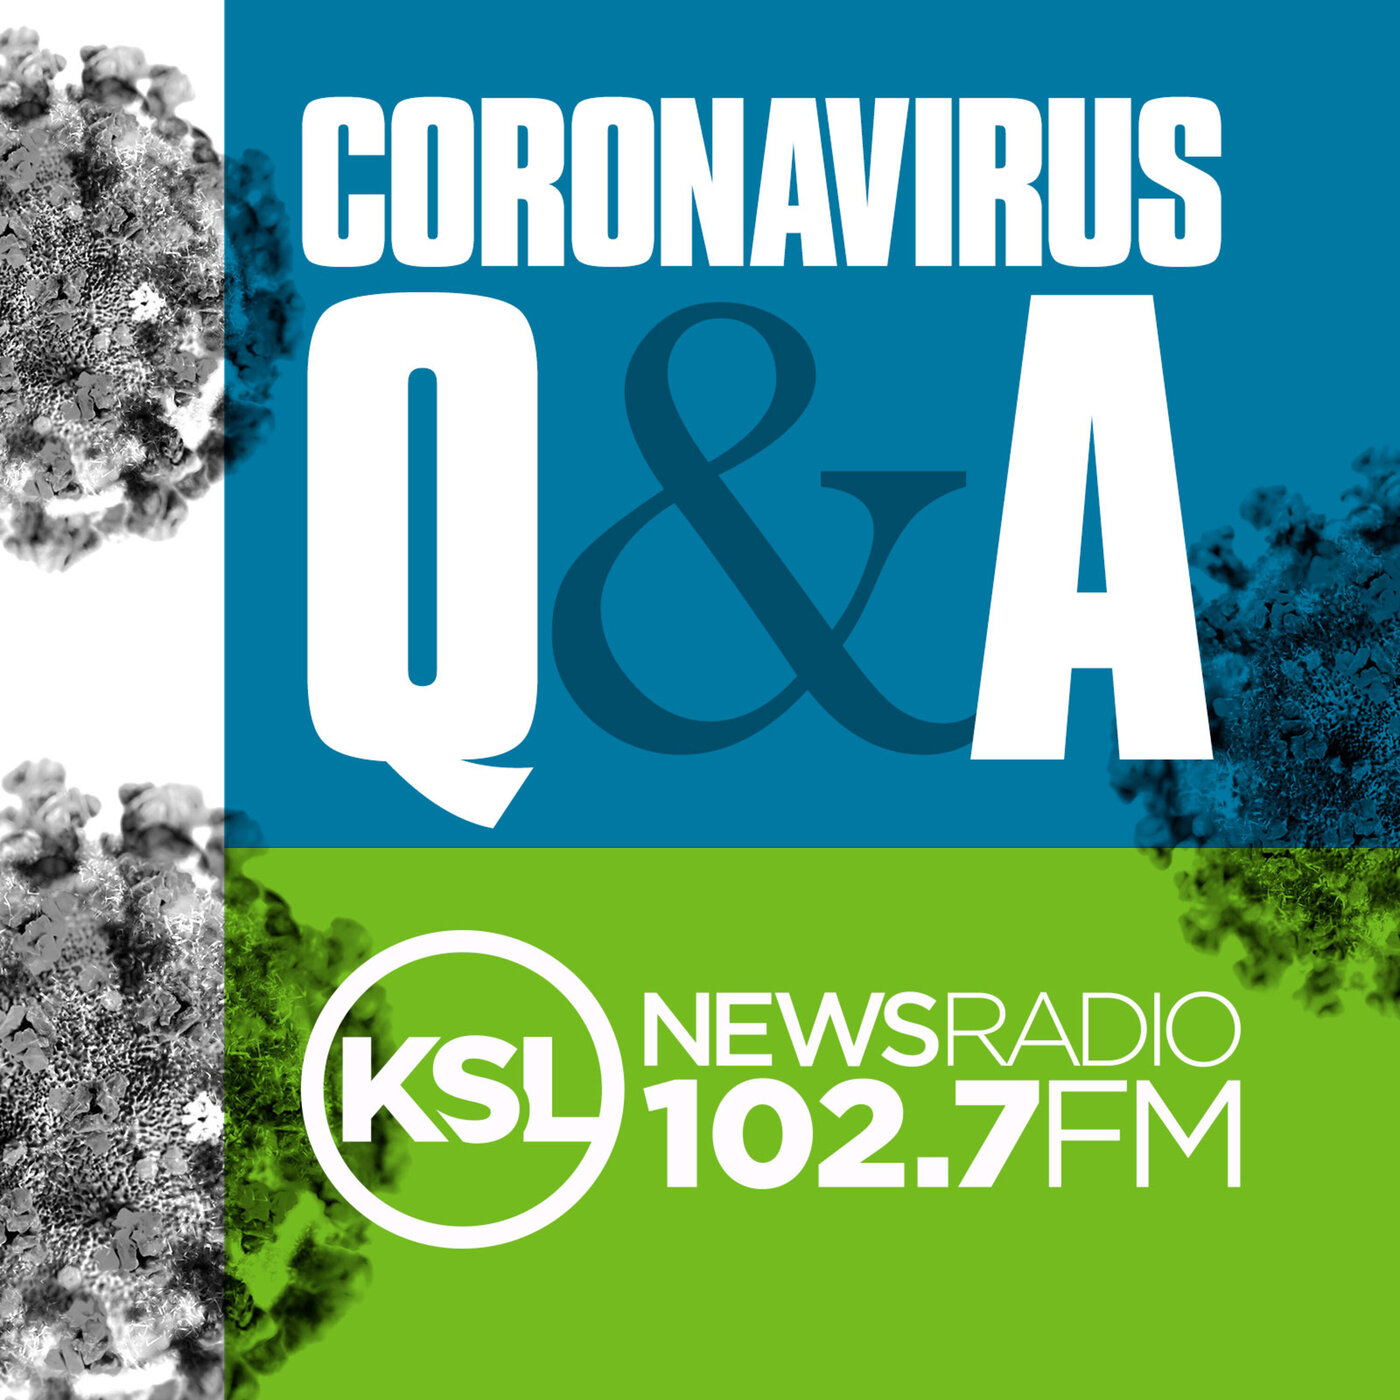 Coronavirus Update November 2nd